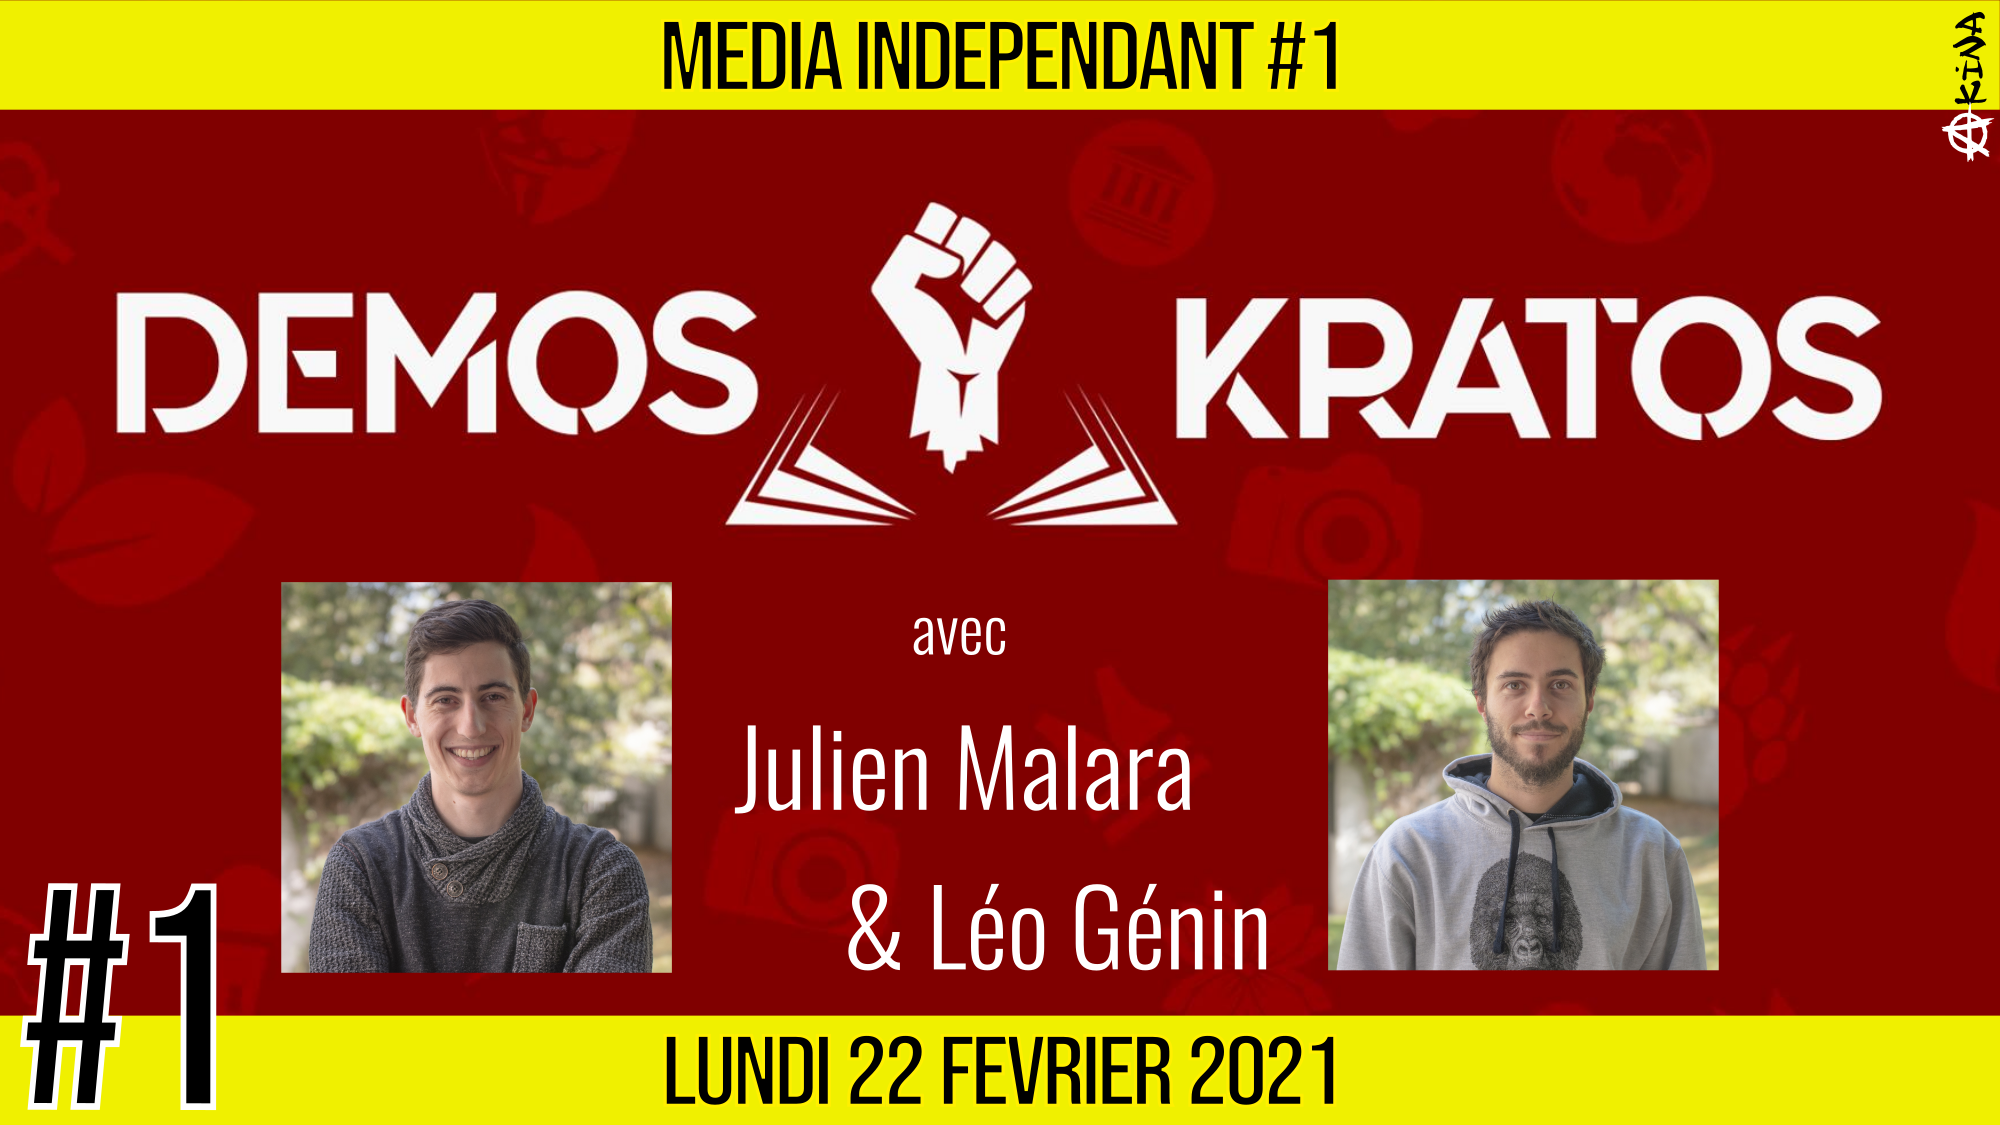 🥊 MEDIA INDÉPENDANT #1 🎥 DEMOS KRATOS 🗣 Julien Malara & Léo Génin 📆 22-02-2021